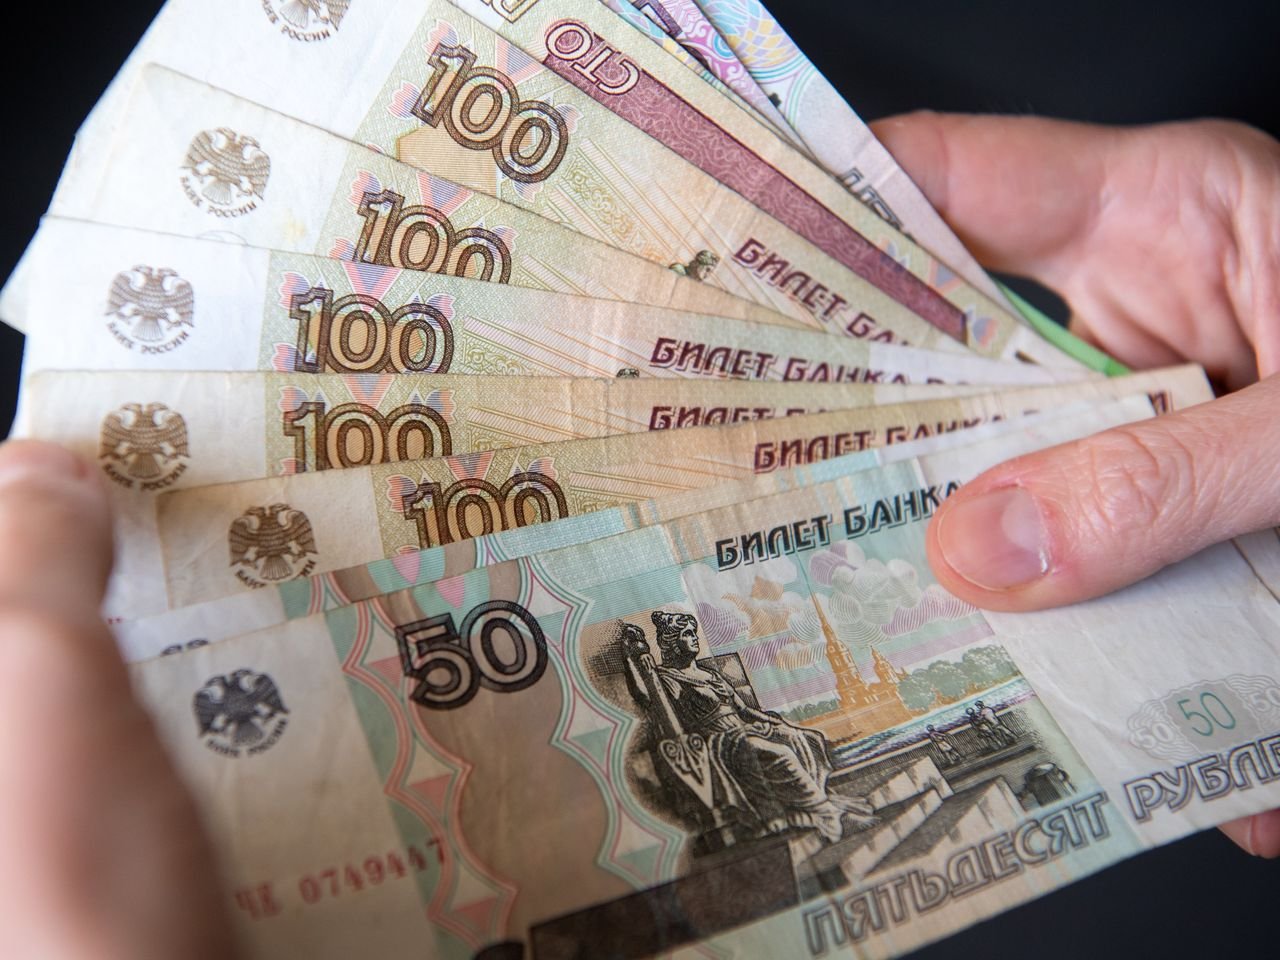  Sondaj: Aproape jumătate dintre ruşi spun că salariul nu le acoperă cheltuielile de bază